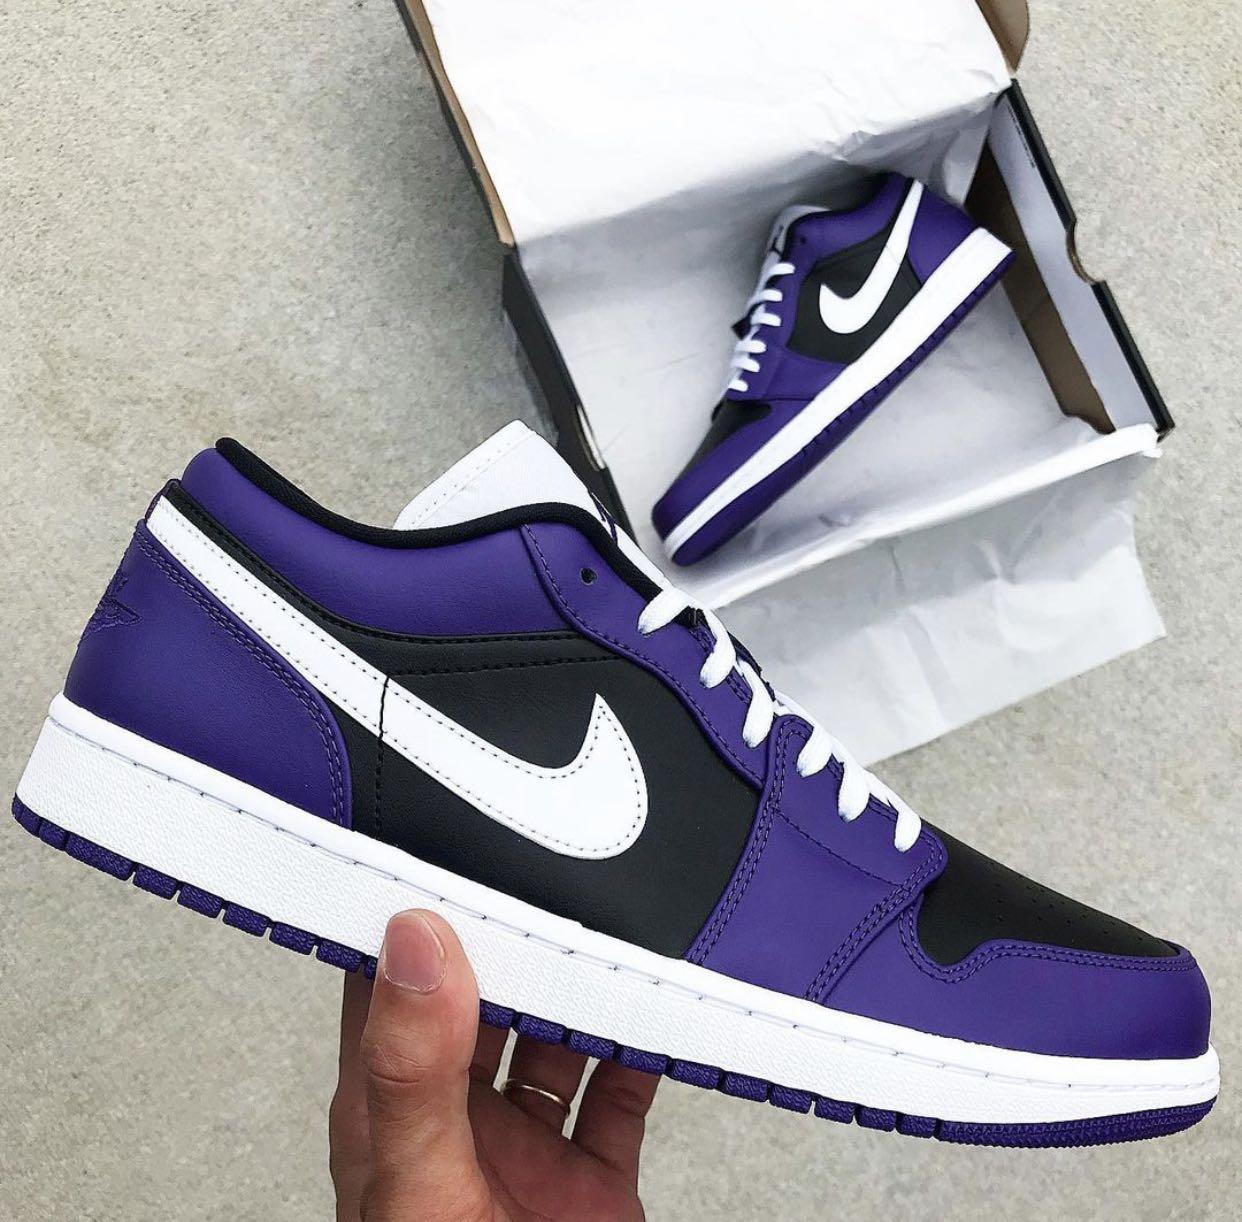 Nike Air Jordan 1 Low Court Purple Black Women S Fashion Footwear Sneakers On Carousell